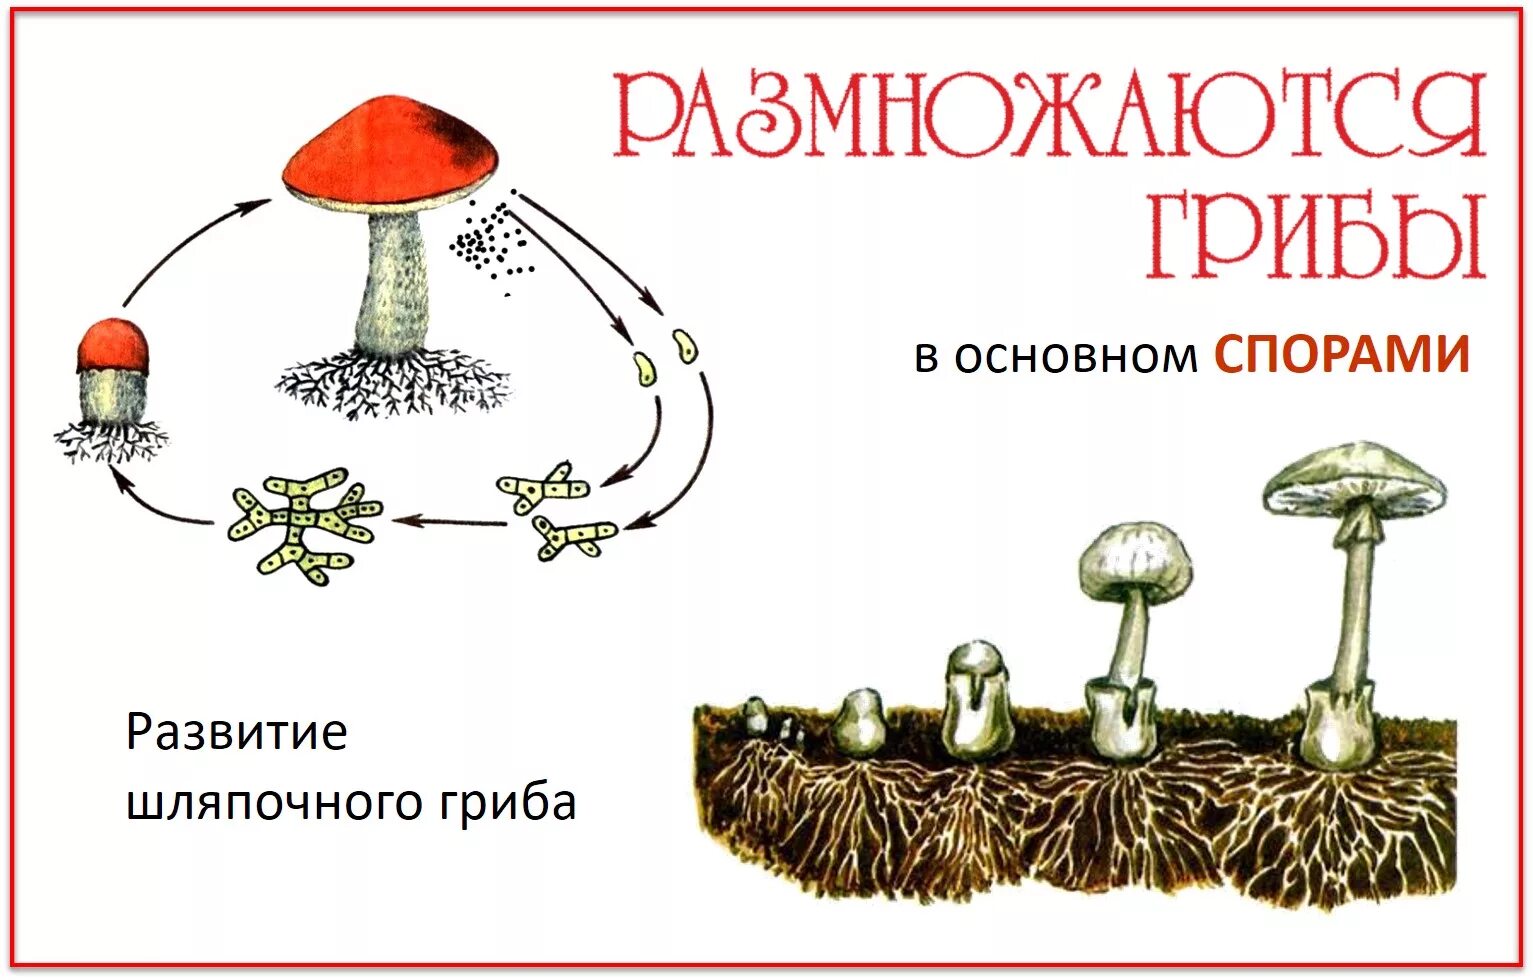 Размножение шляпочного гриба схема. Размножение шляпочных грибов схема. Размножение грибов грибницей. Размножение спорами грибы. Споры грибов служат для